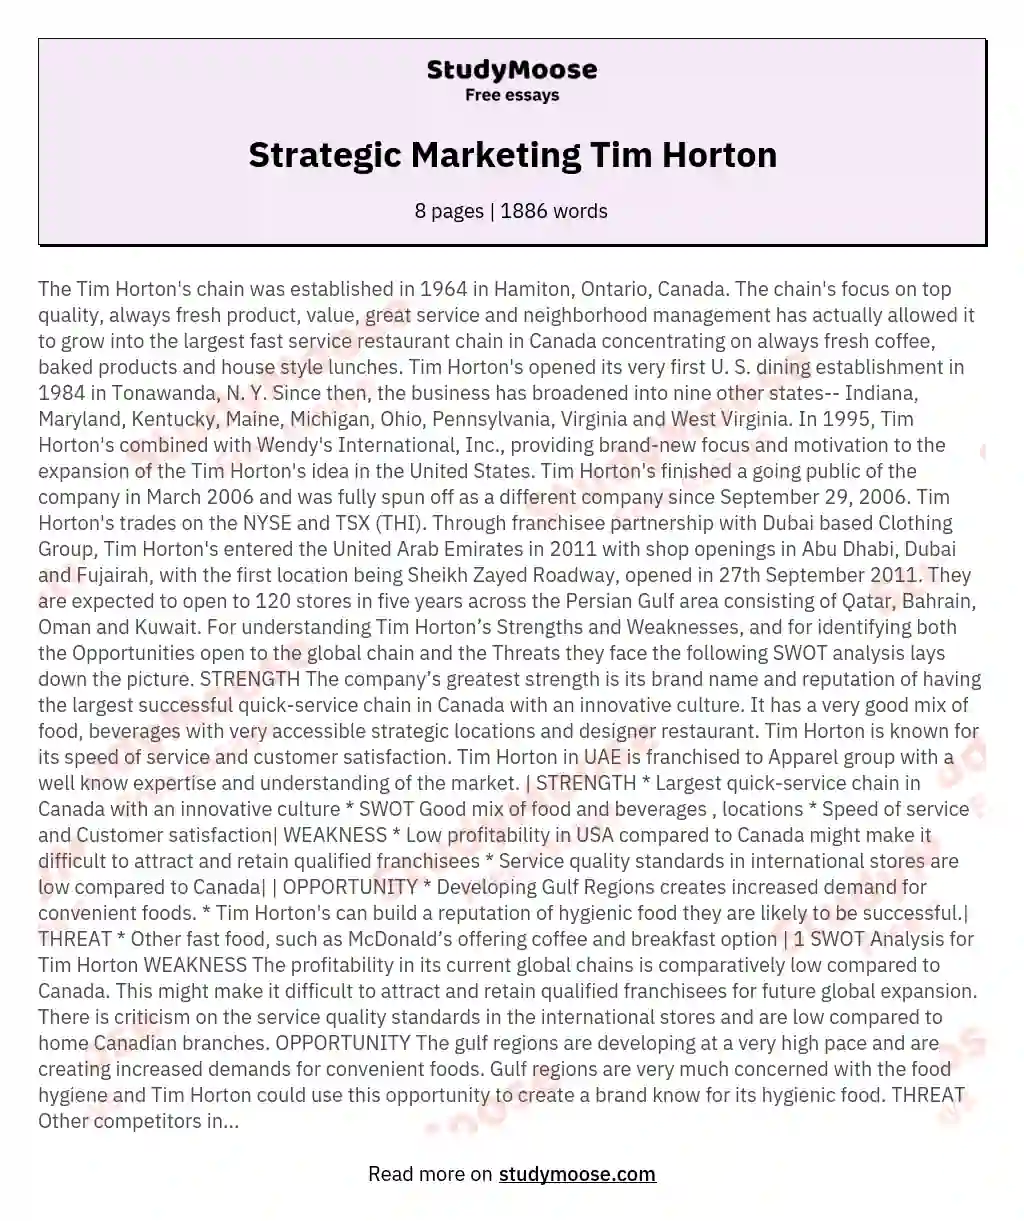 Strategic Marketing Tim Horton essay